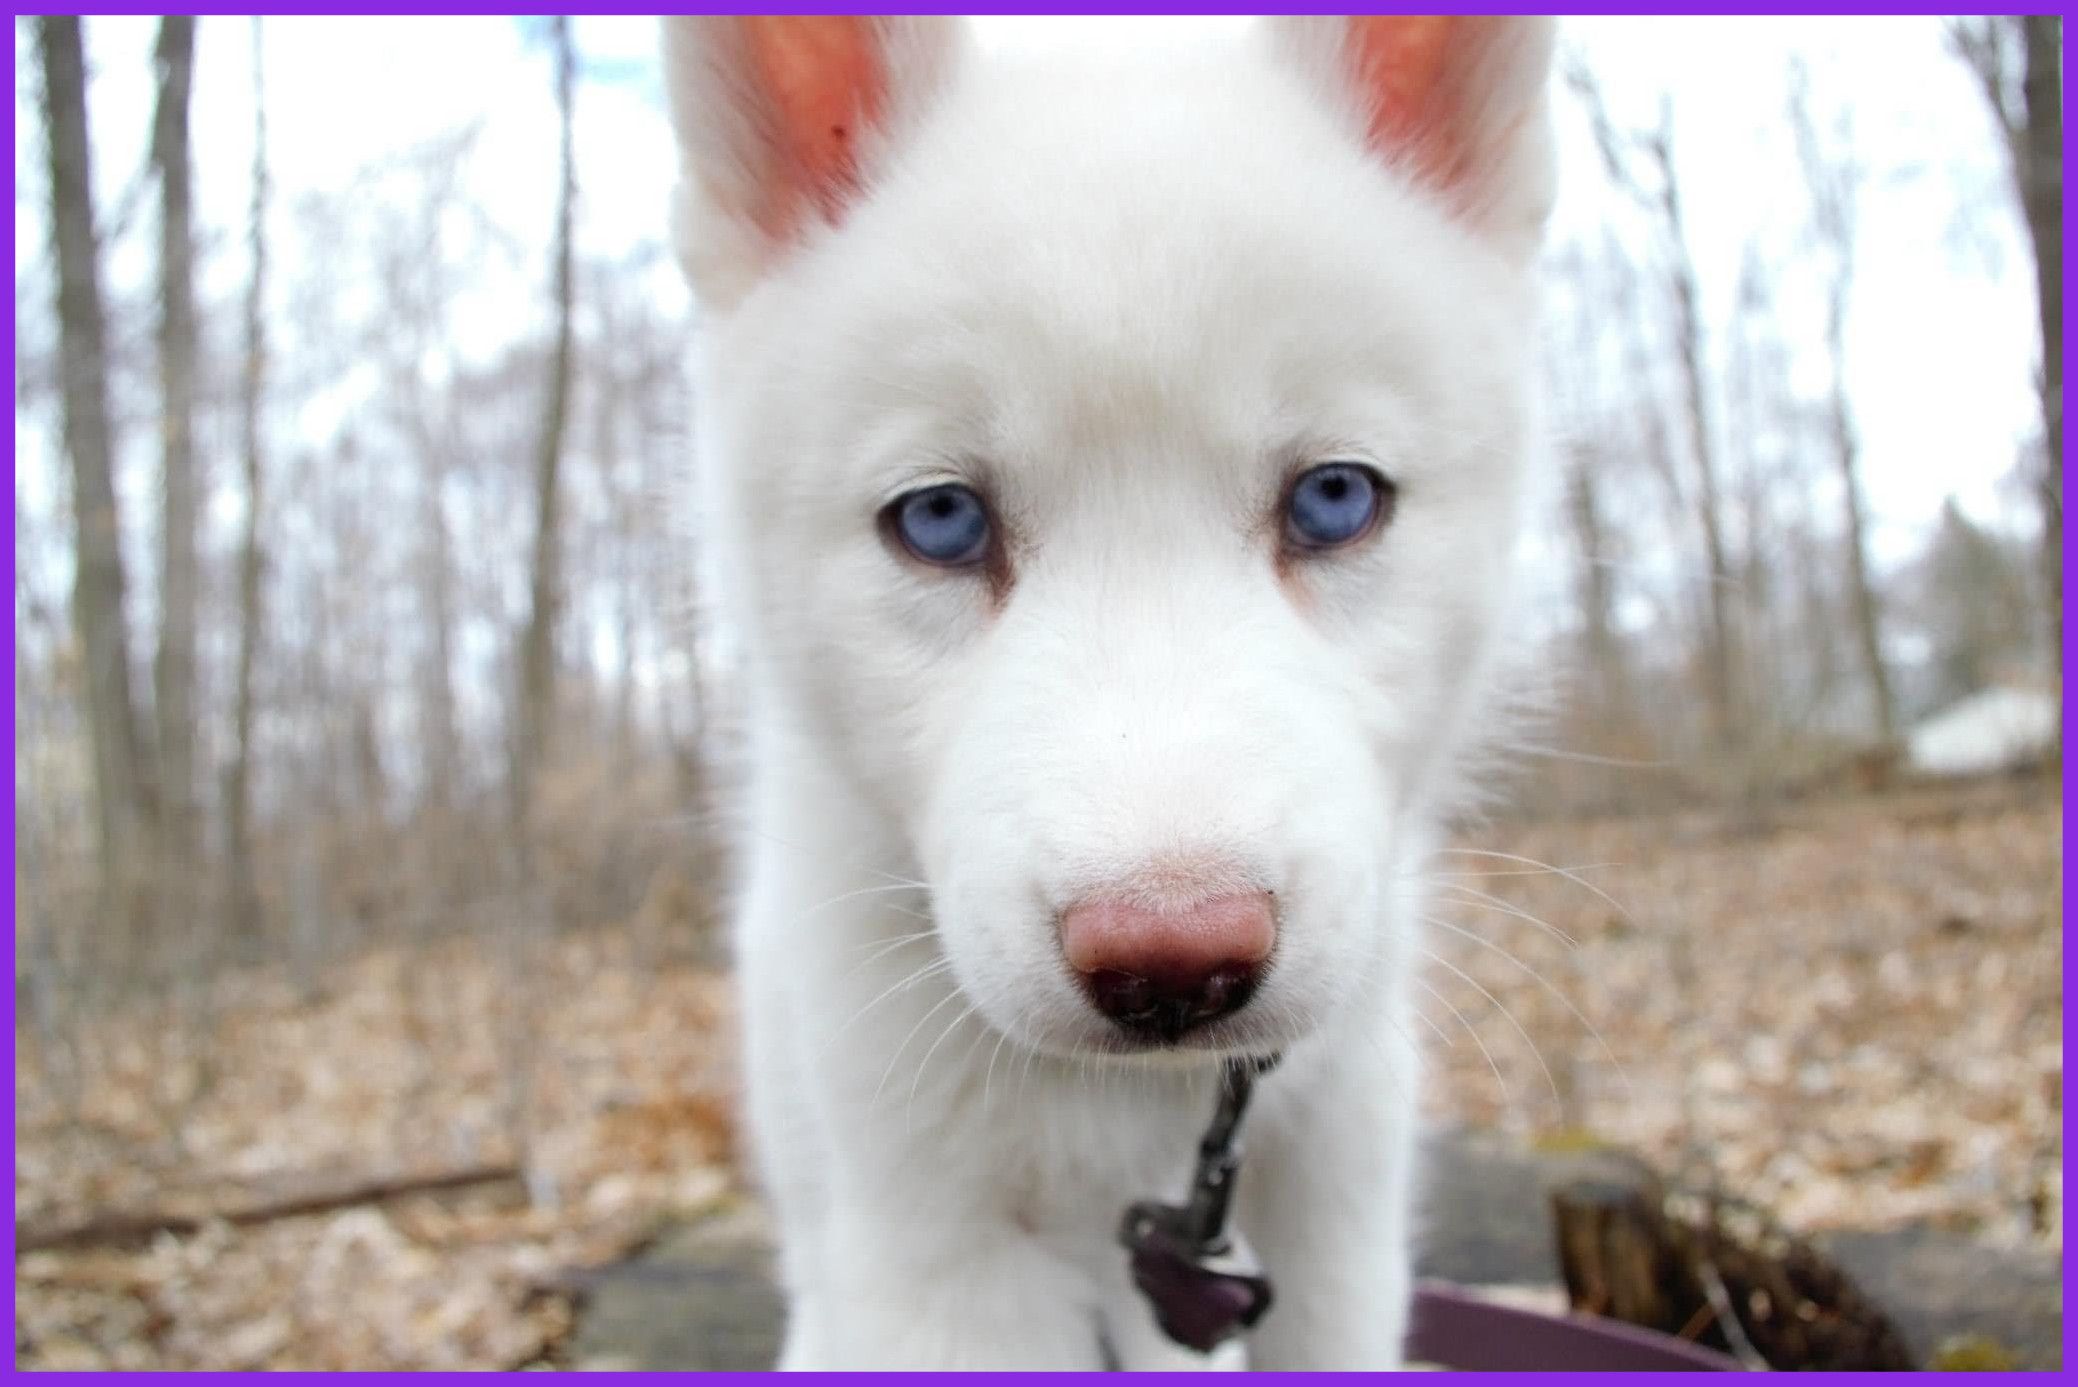  تصویر جالب از سگ هاسکی سفید ناناز با چشمان درشت و زیبا 